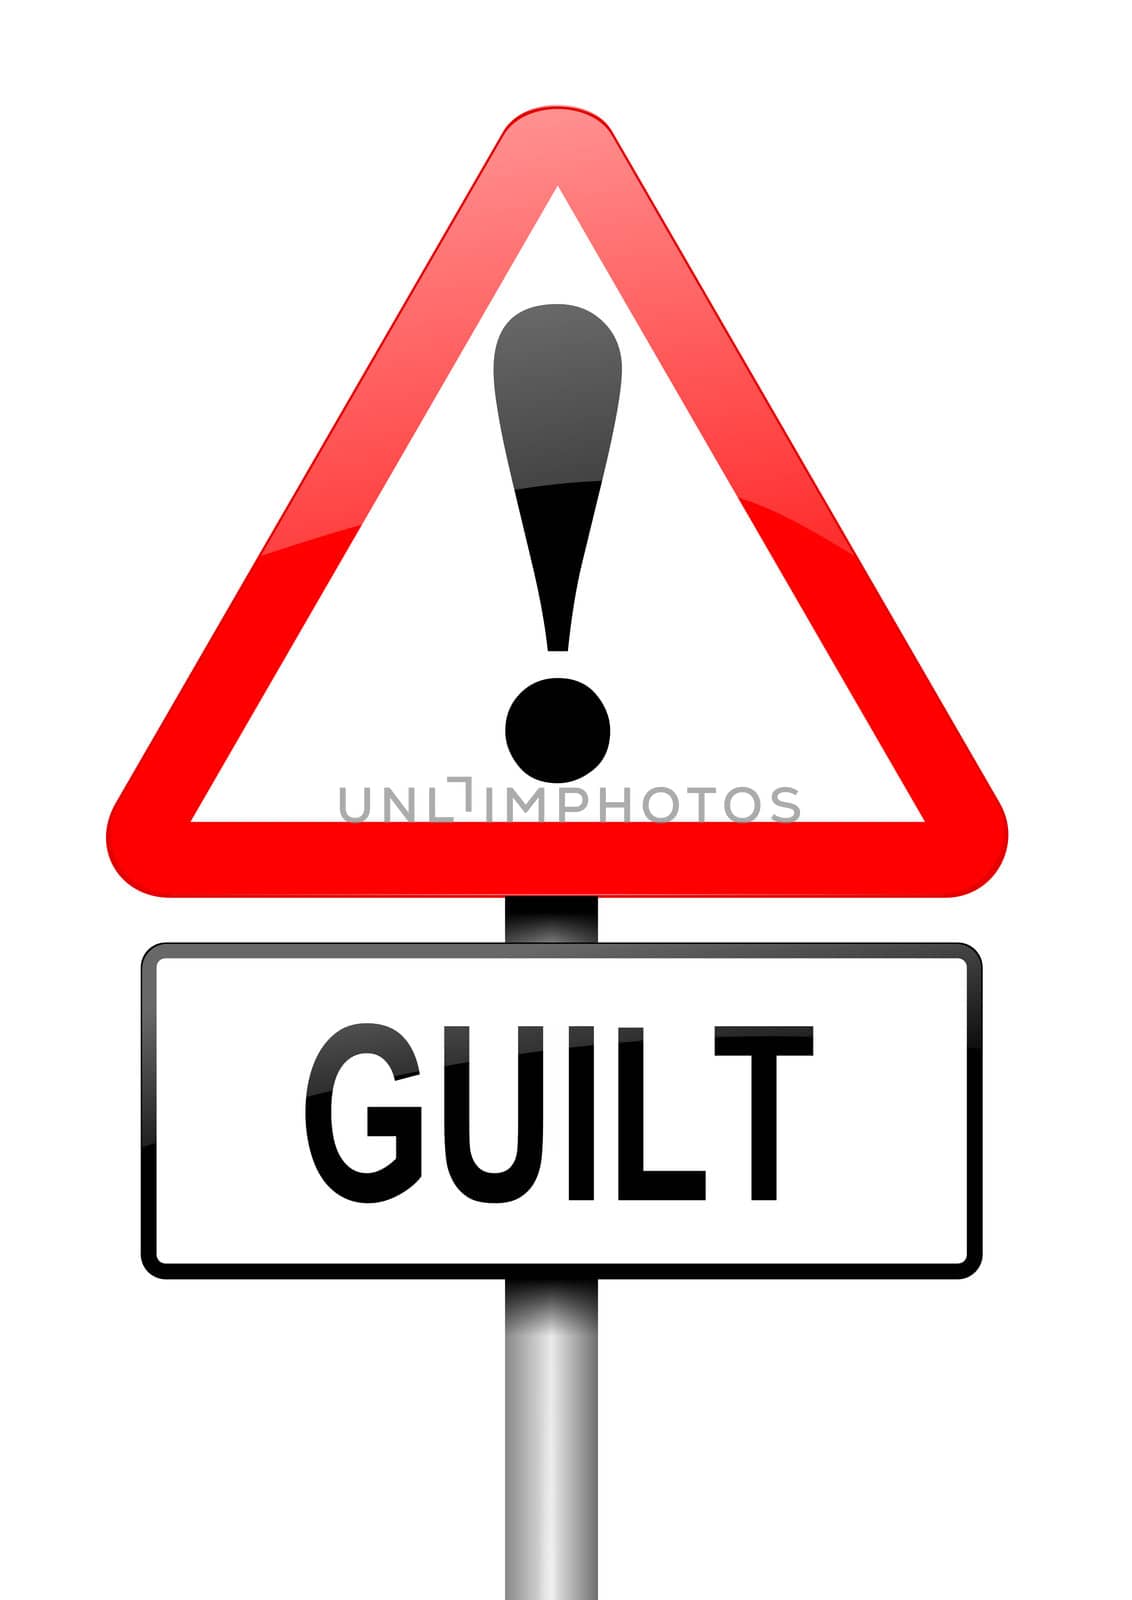 Guilt concept. by 72soul